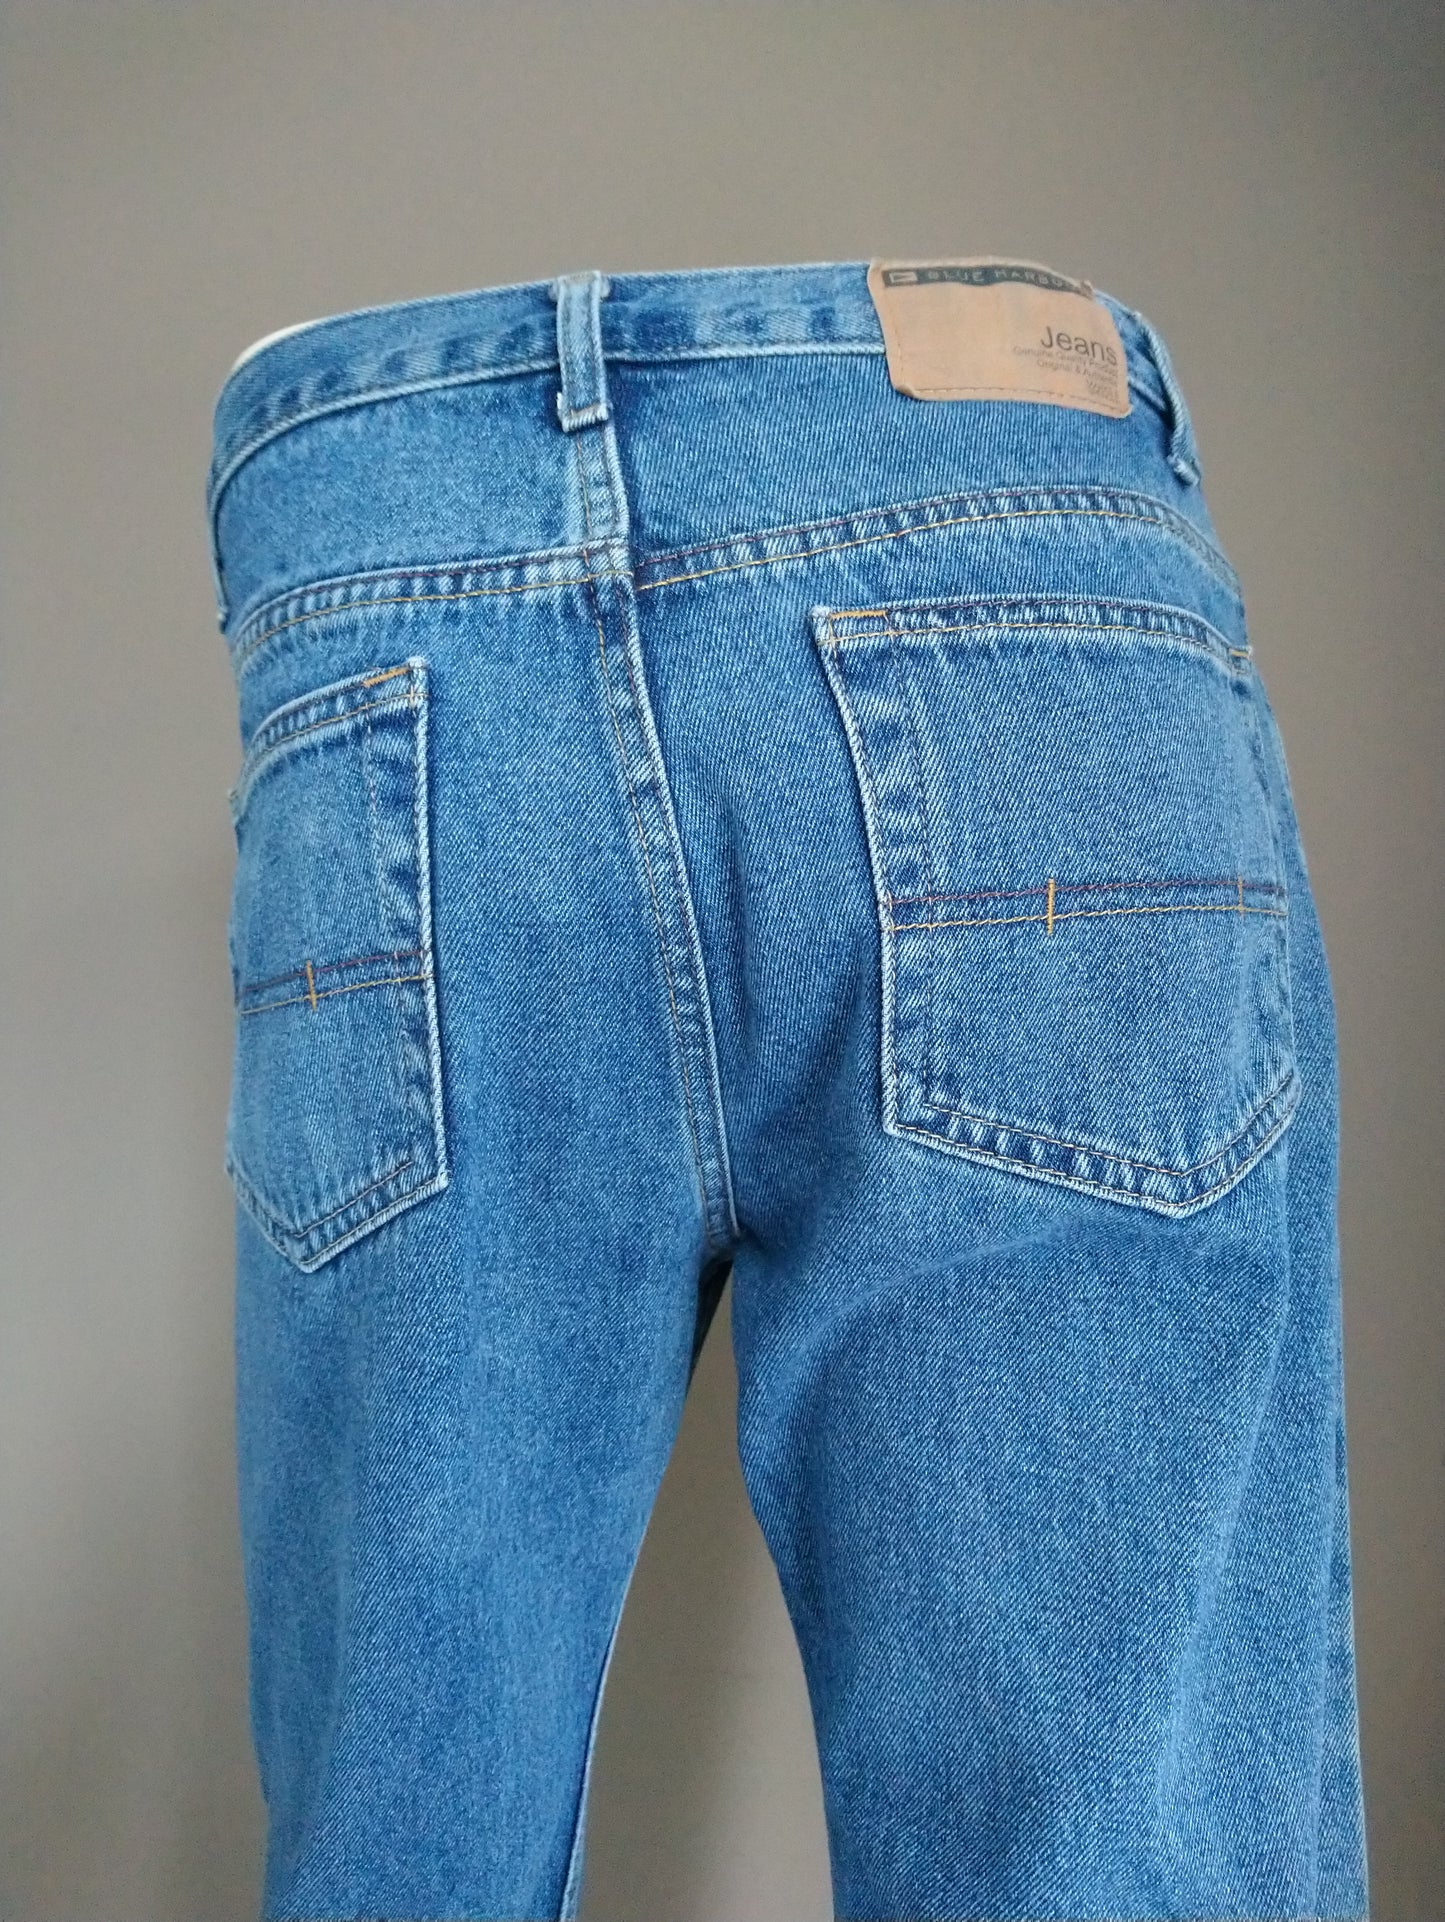 Blue Harbor Jeans. Blue colored. Size W32 - L30.